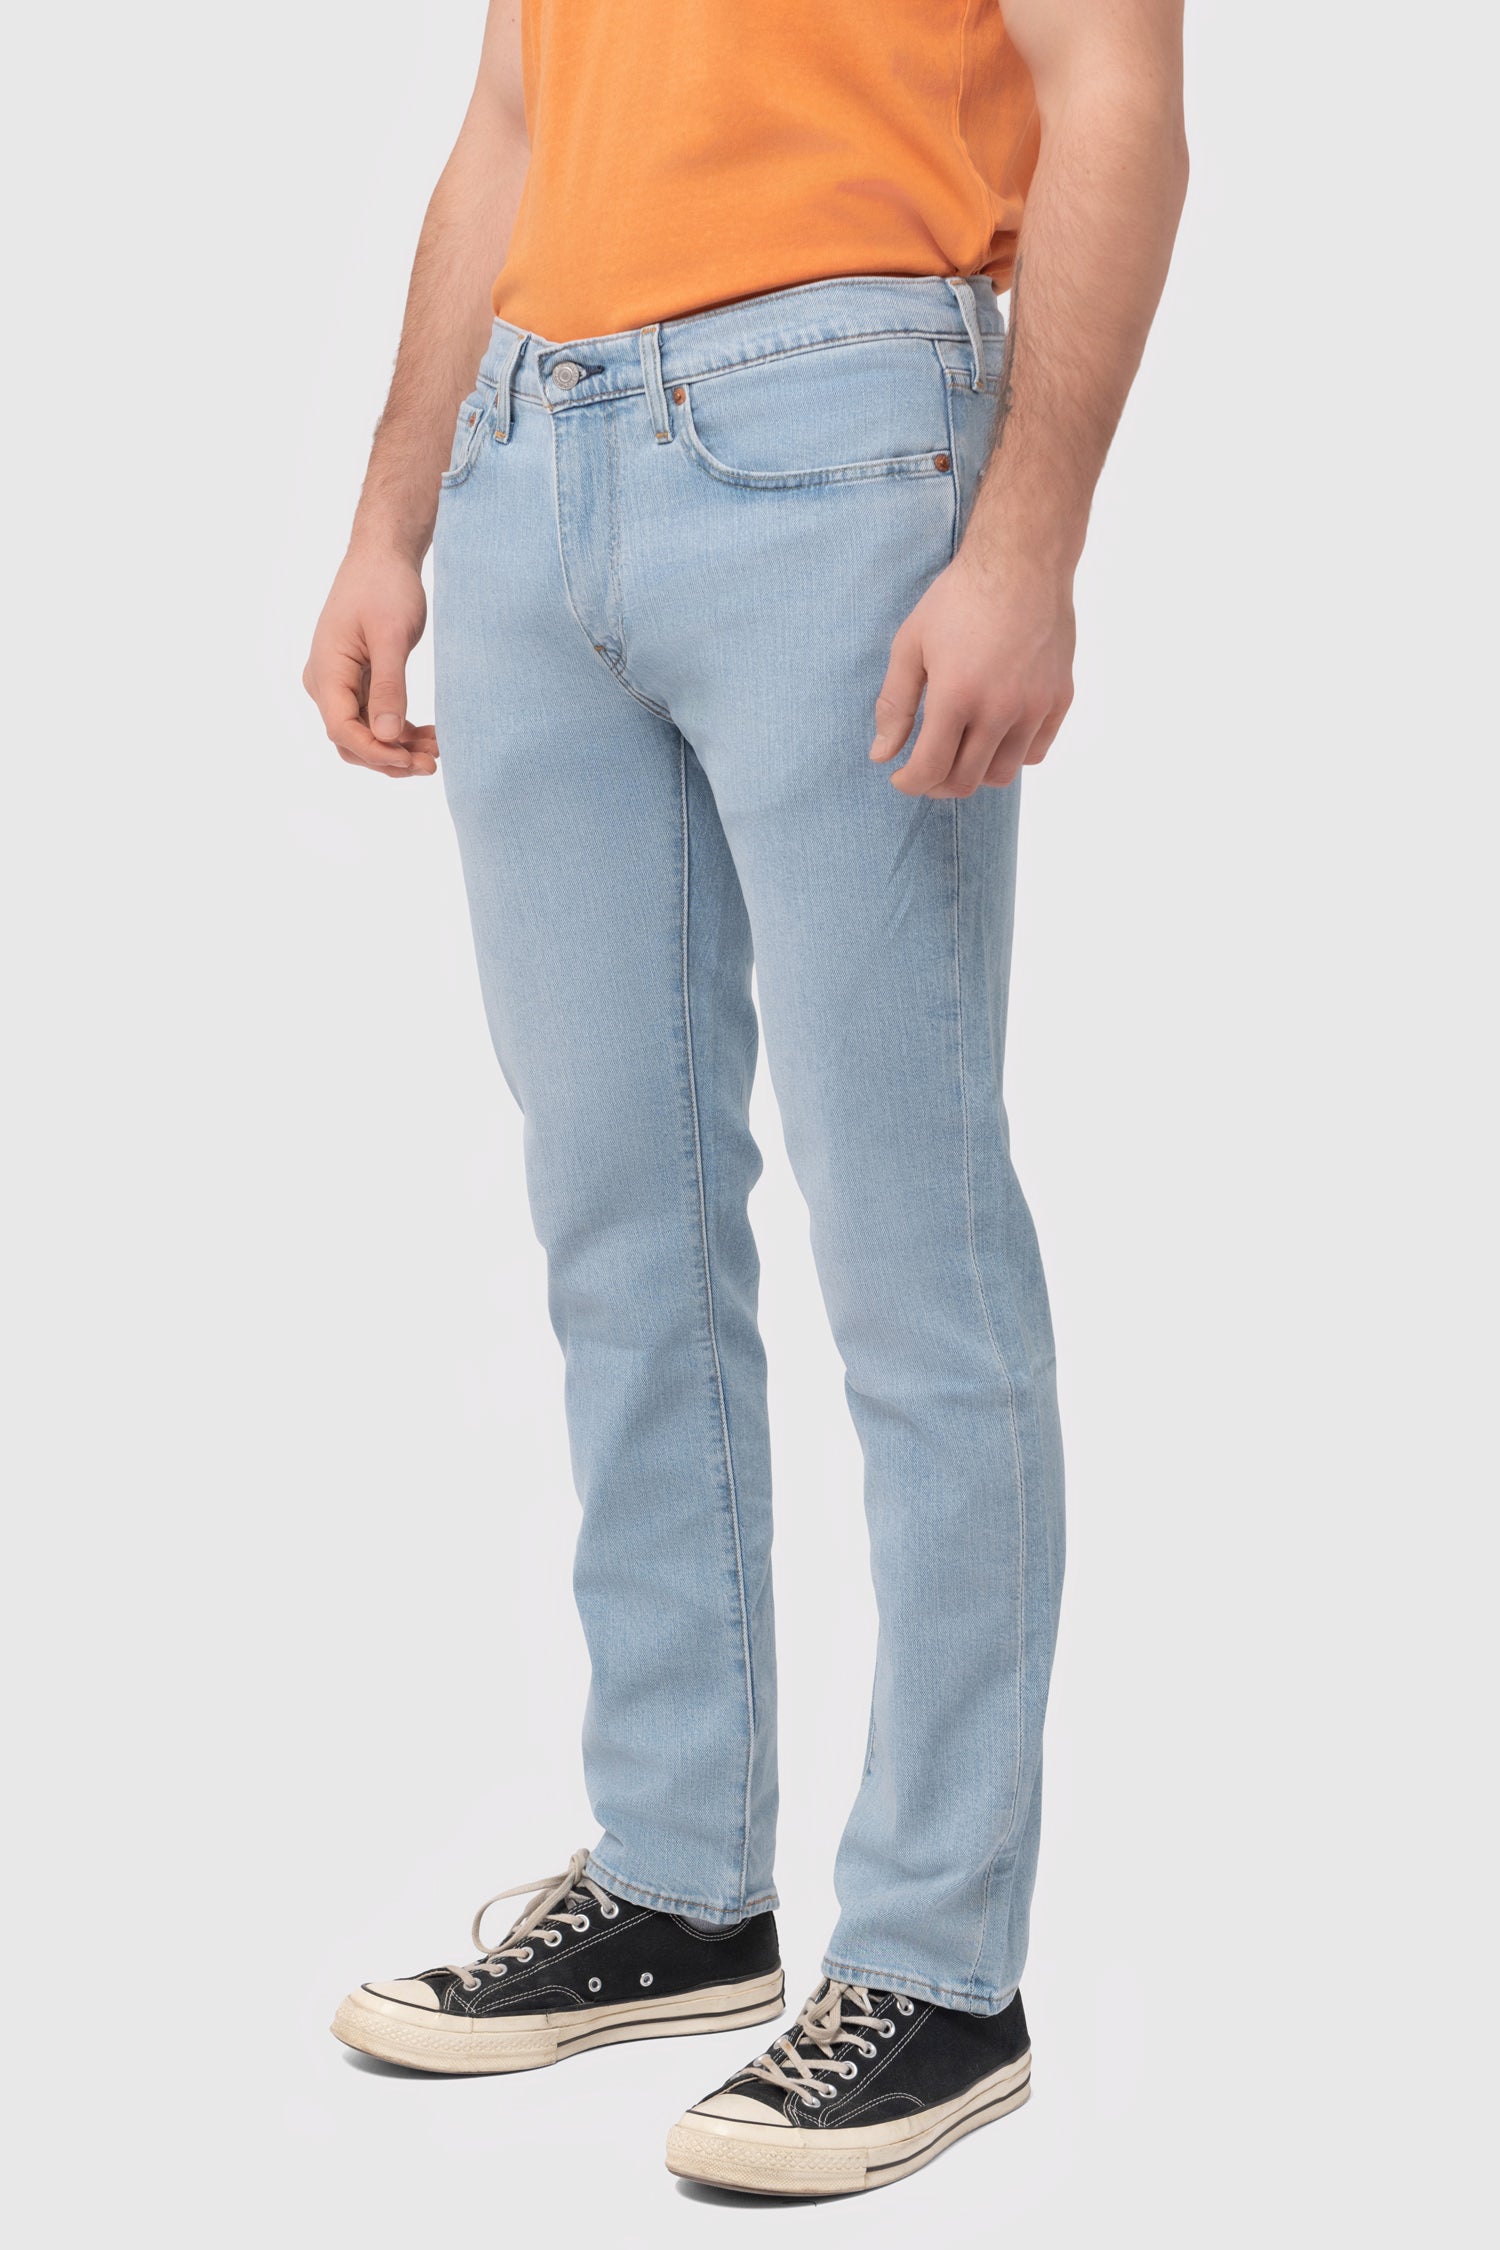 Levi's 511 Slim Fit Men's Jeans - Corfo Got Friends 29 x 32